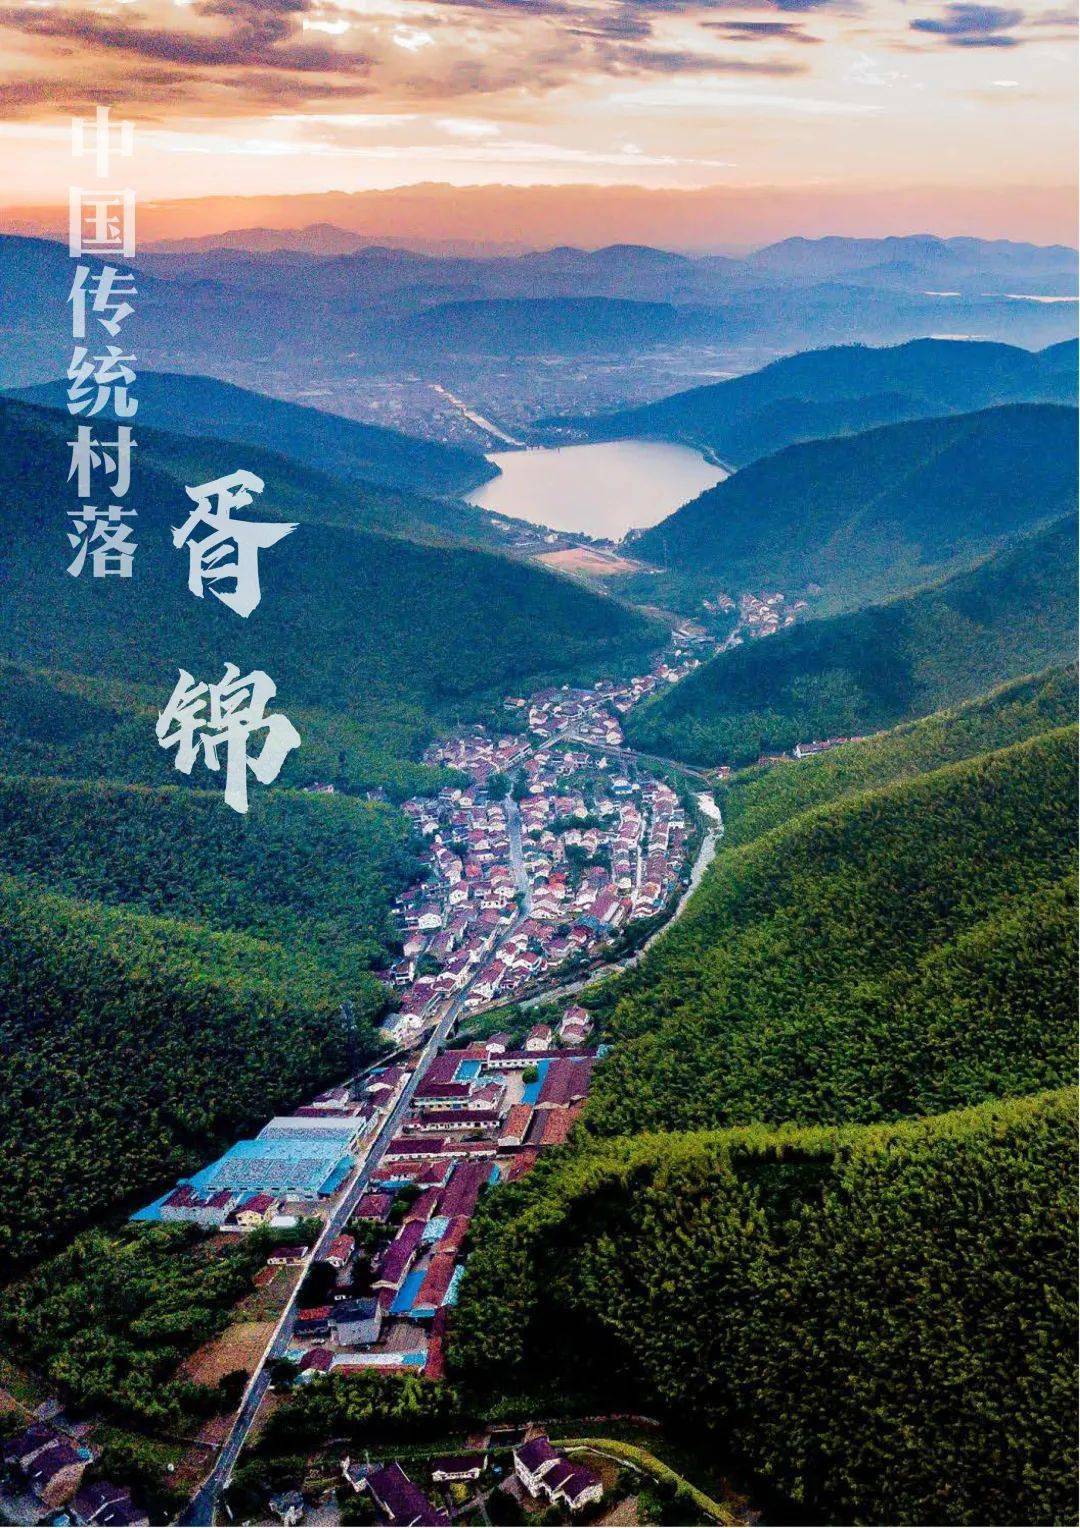 太华镇胥锦村胥锦村位于宜兴市太华镇东南侧,坐落在苏,浙,皖三省交界